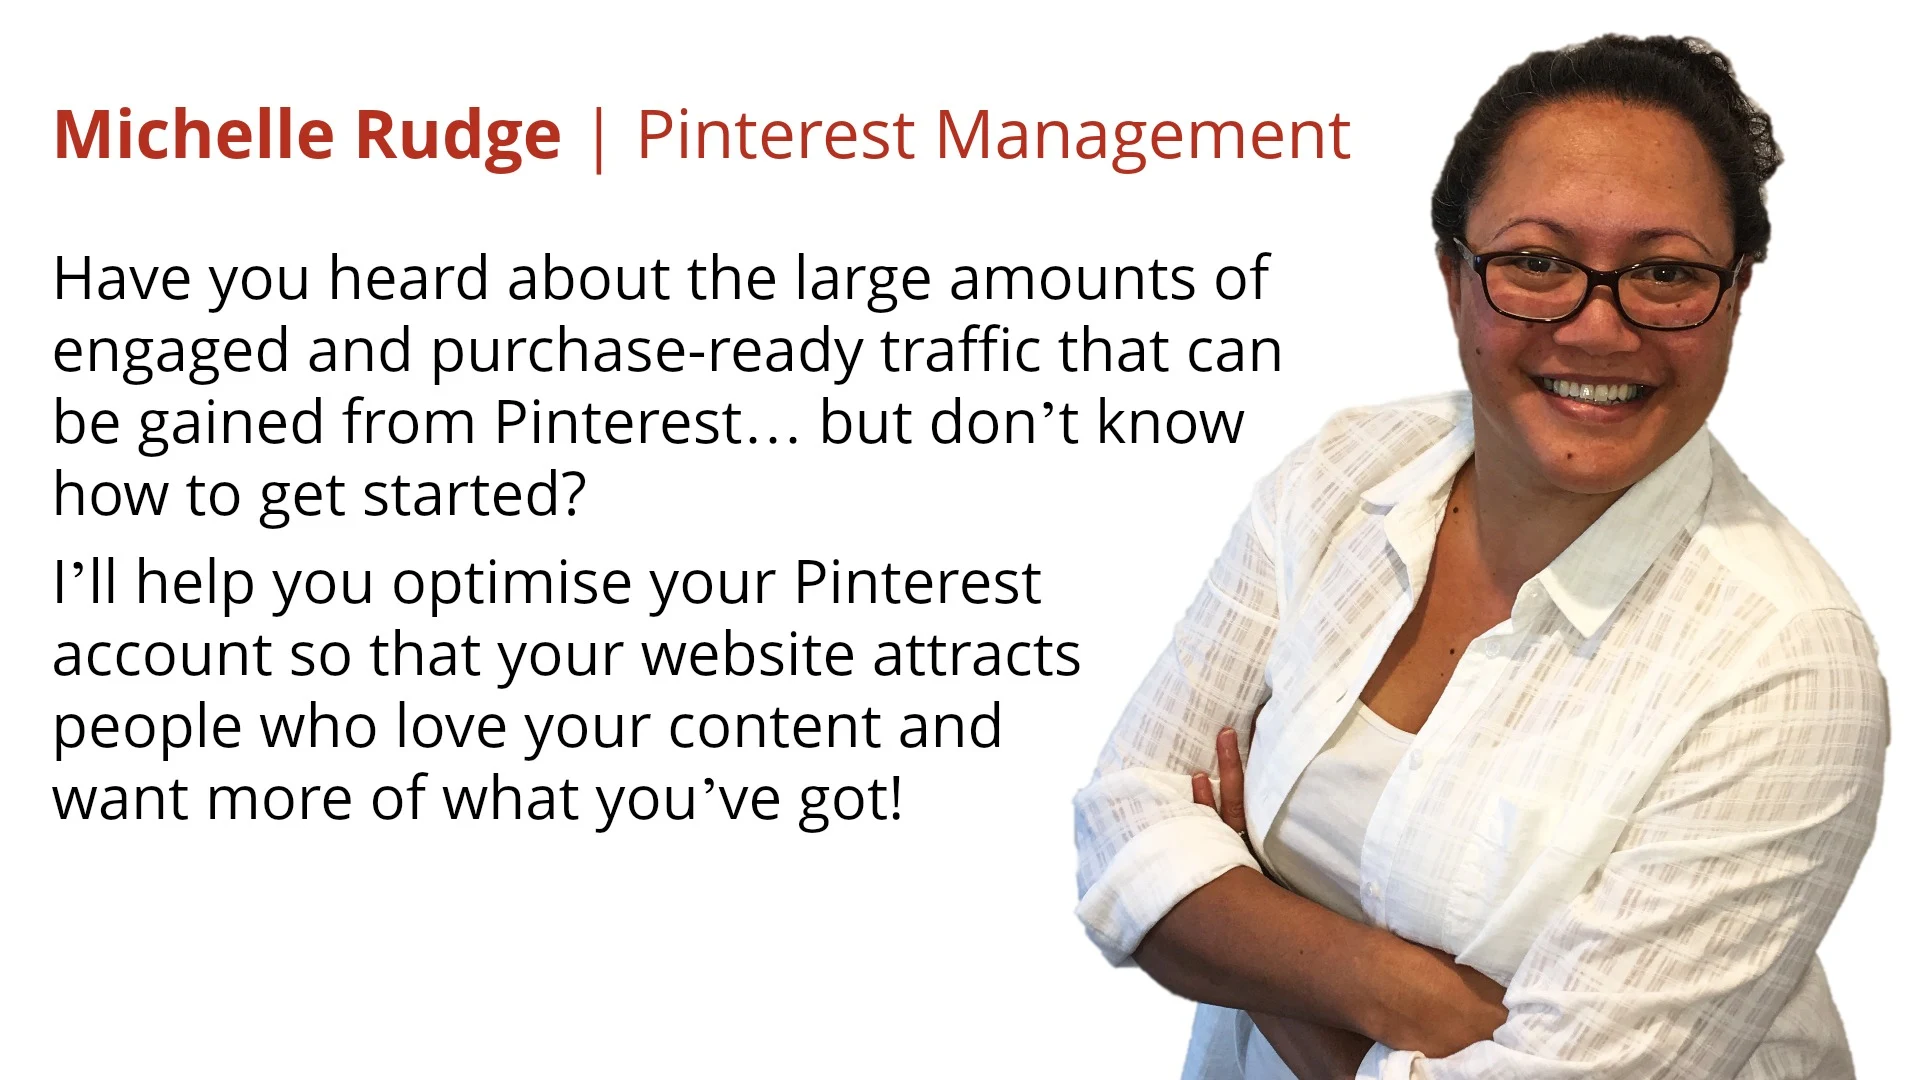 Michelle Rudge | Pinterest Management Services